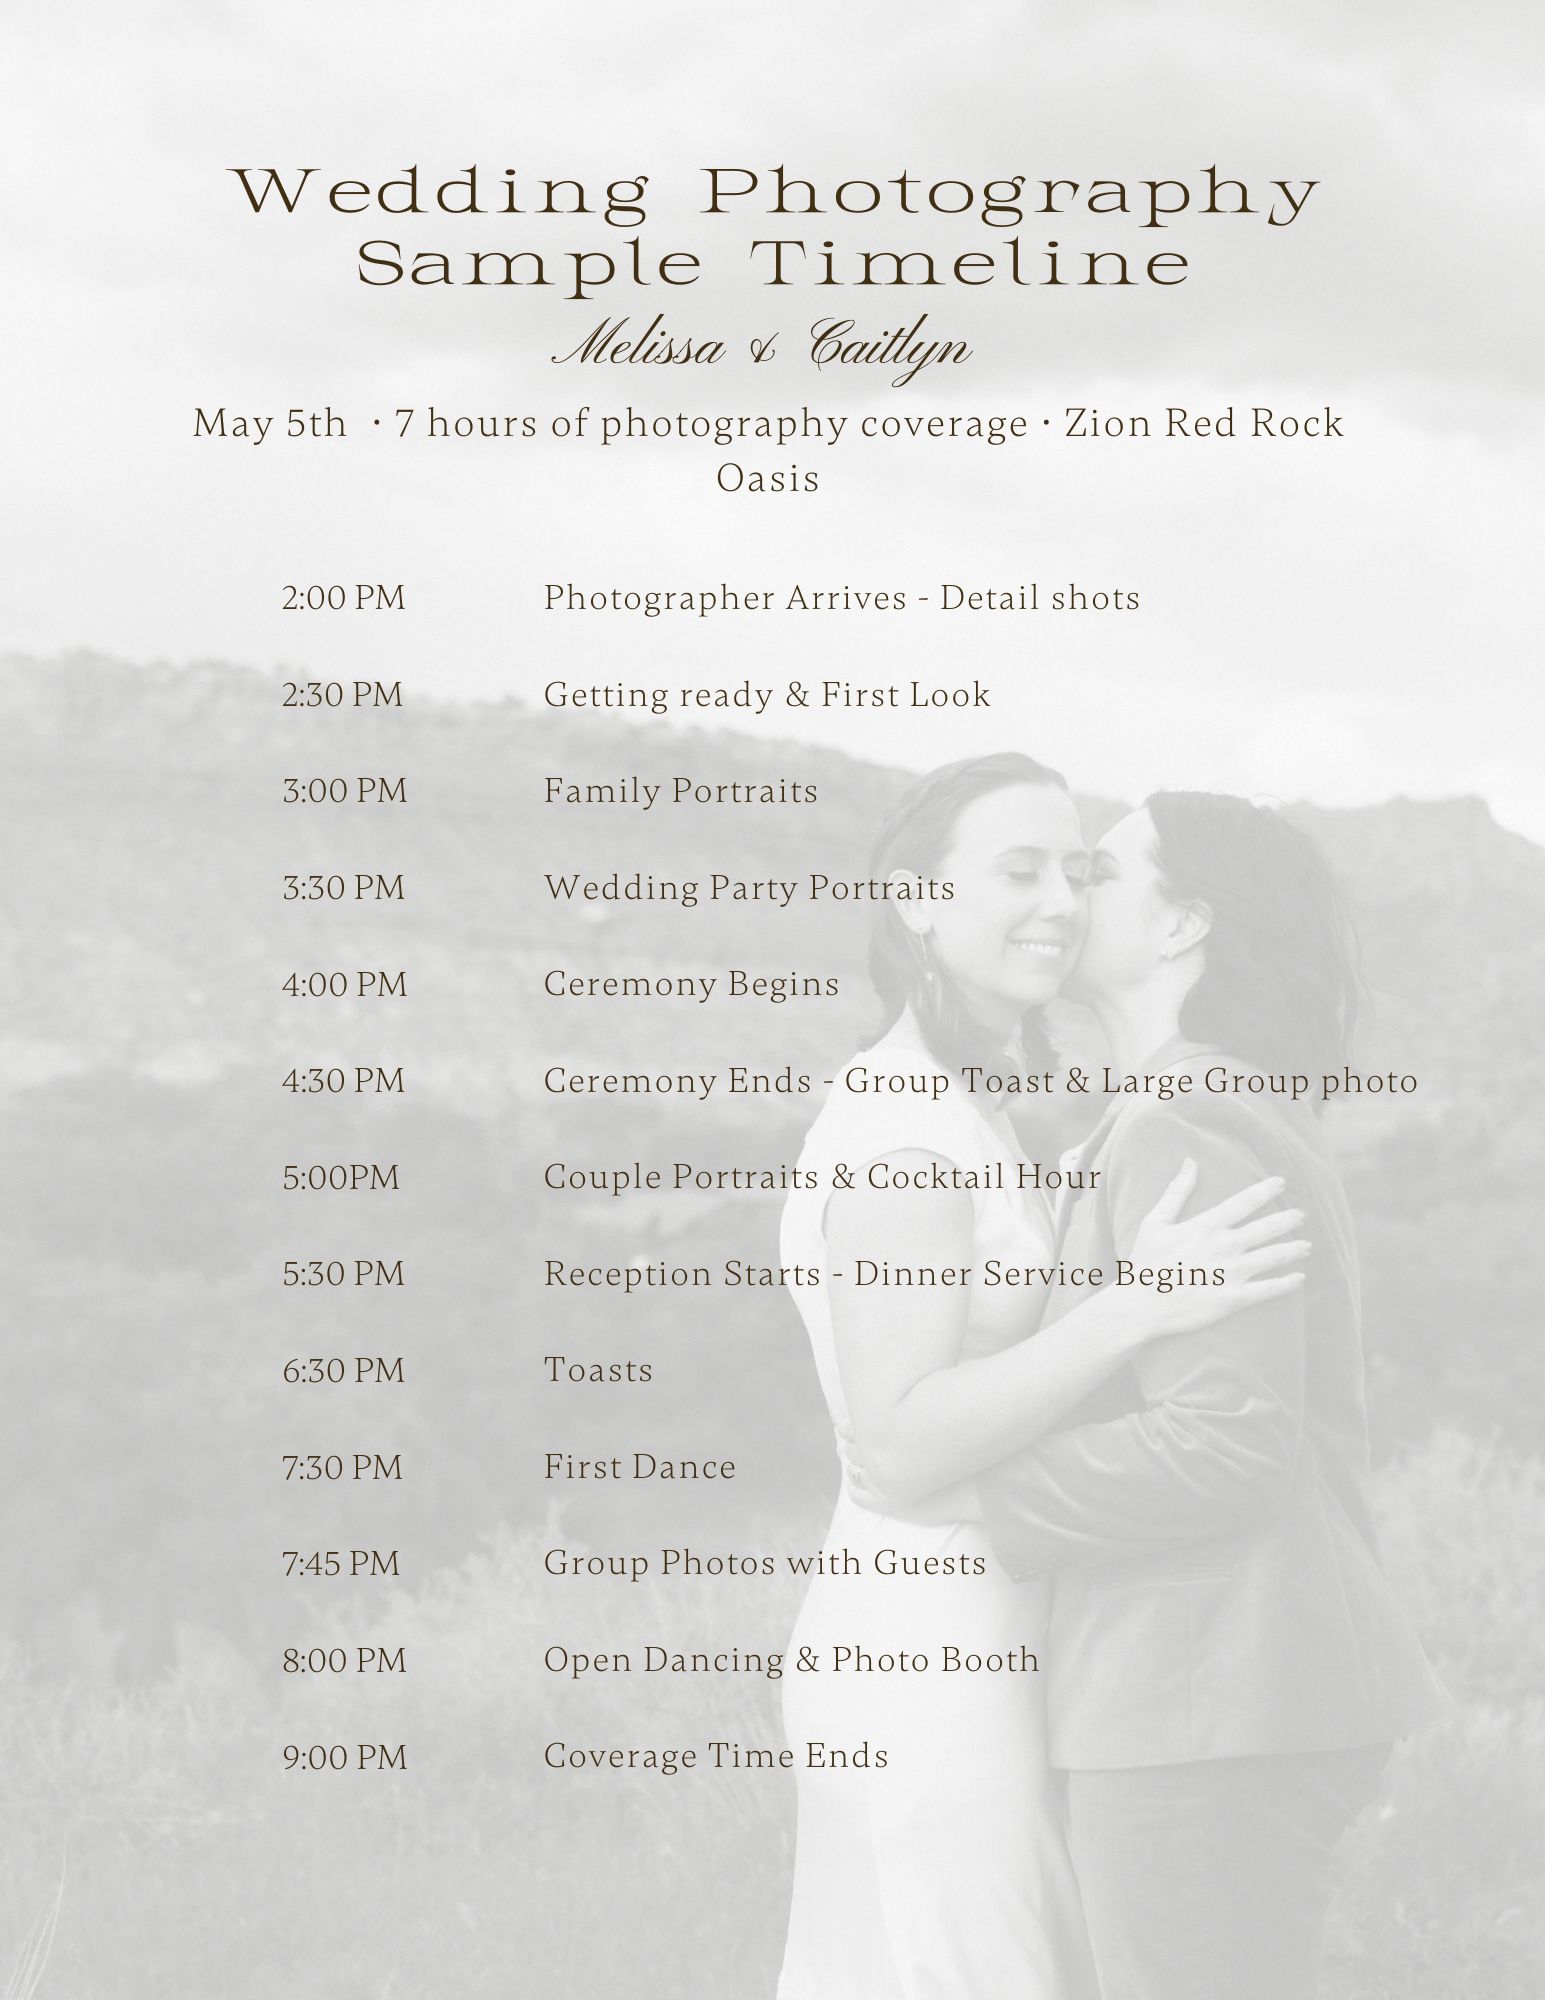 Sample Timeline for M&C's Wedding